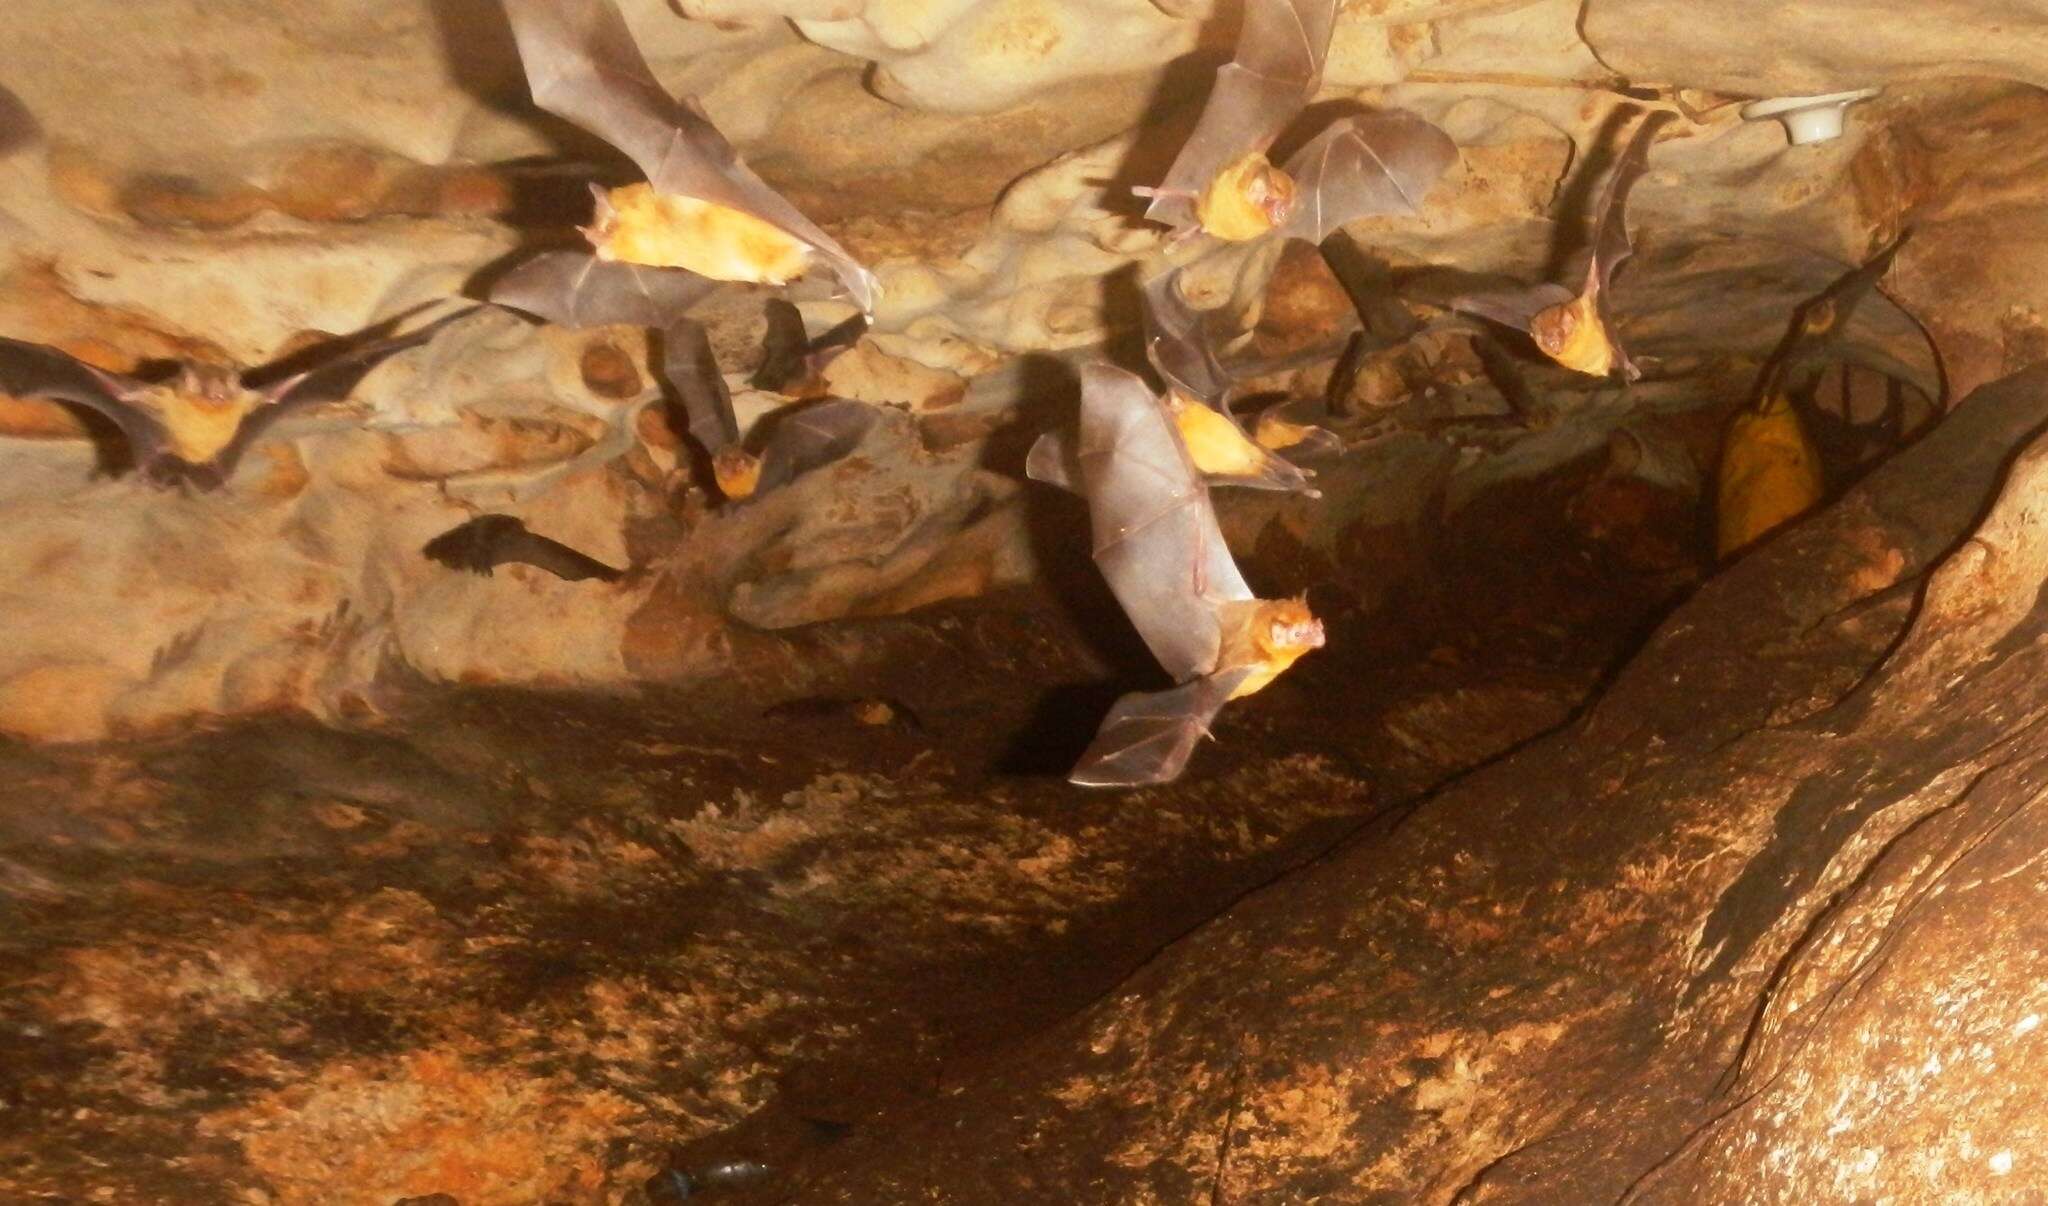 Image of Orange-throated Bat